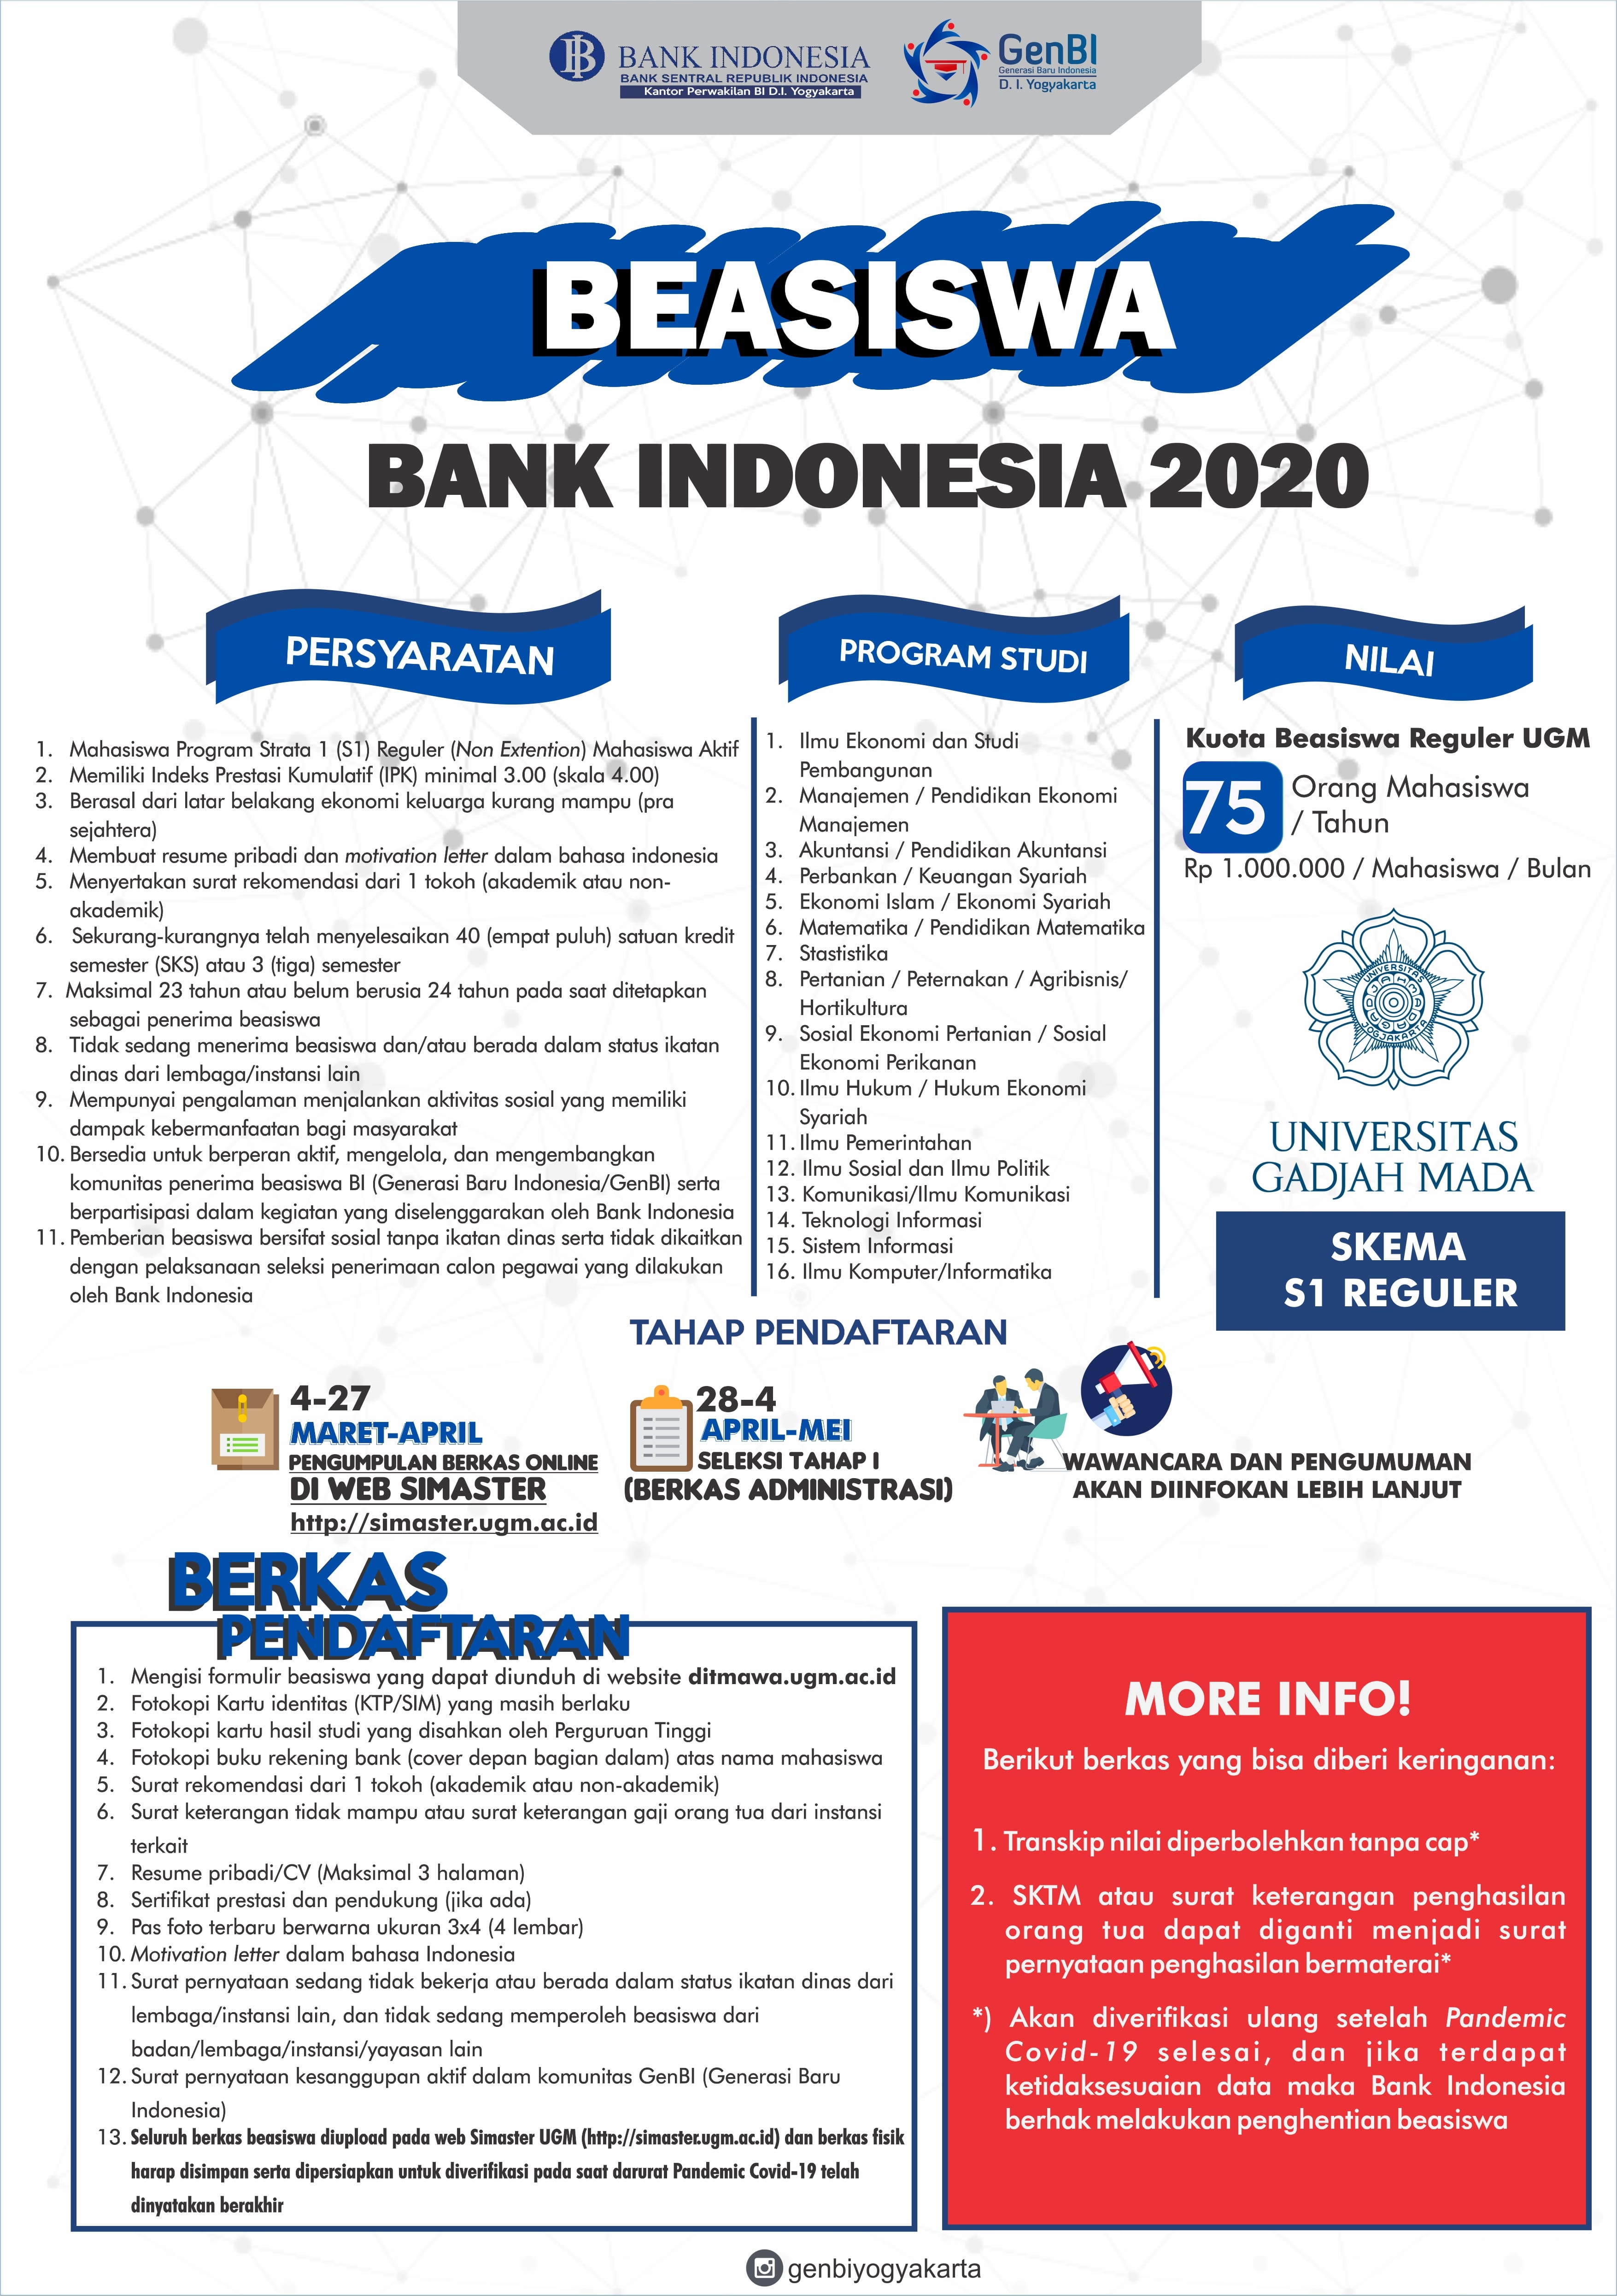 Penawaran Beasiswa Bank Indonesia Skema S1 Reguler Tahun 2020 – Direktorat Kemahasiswaan